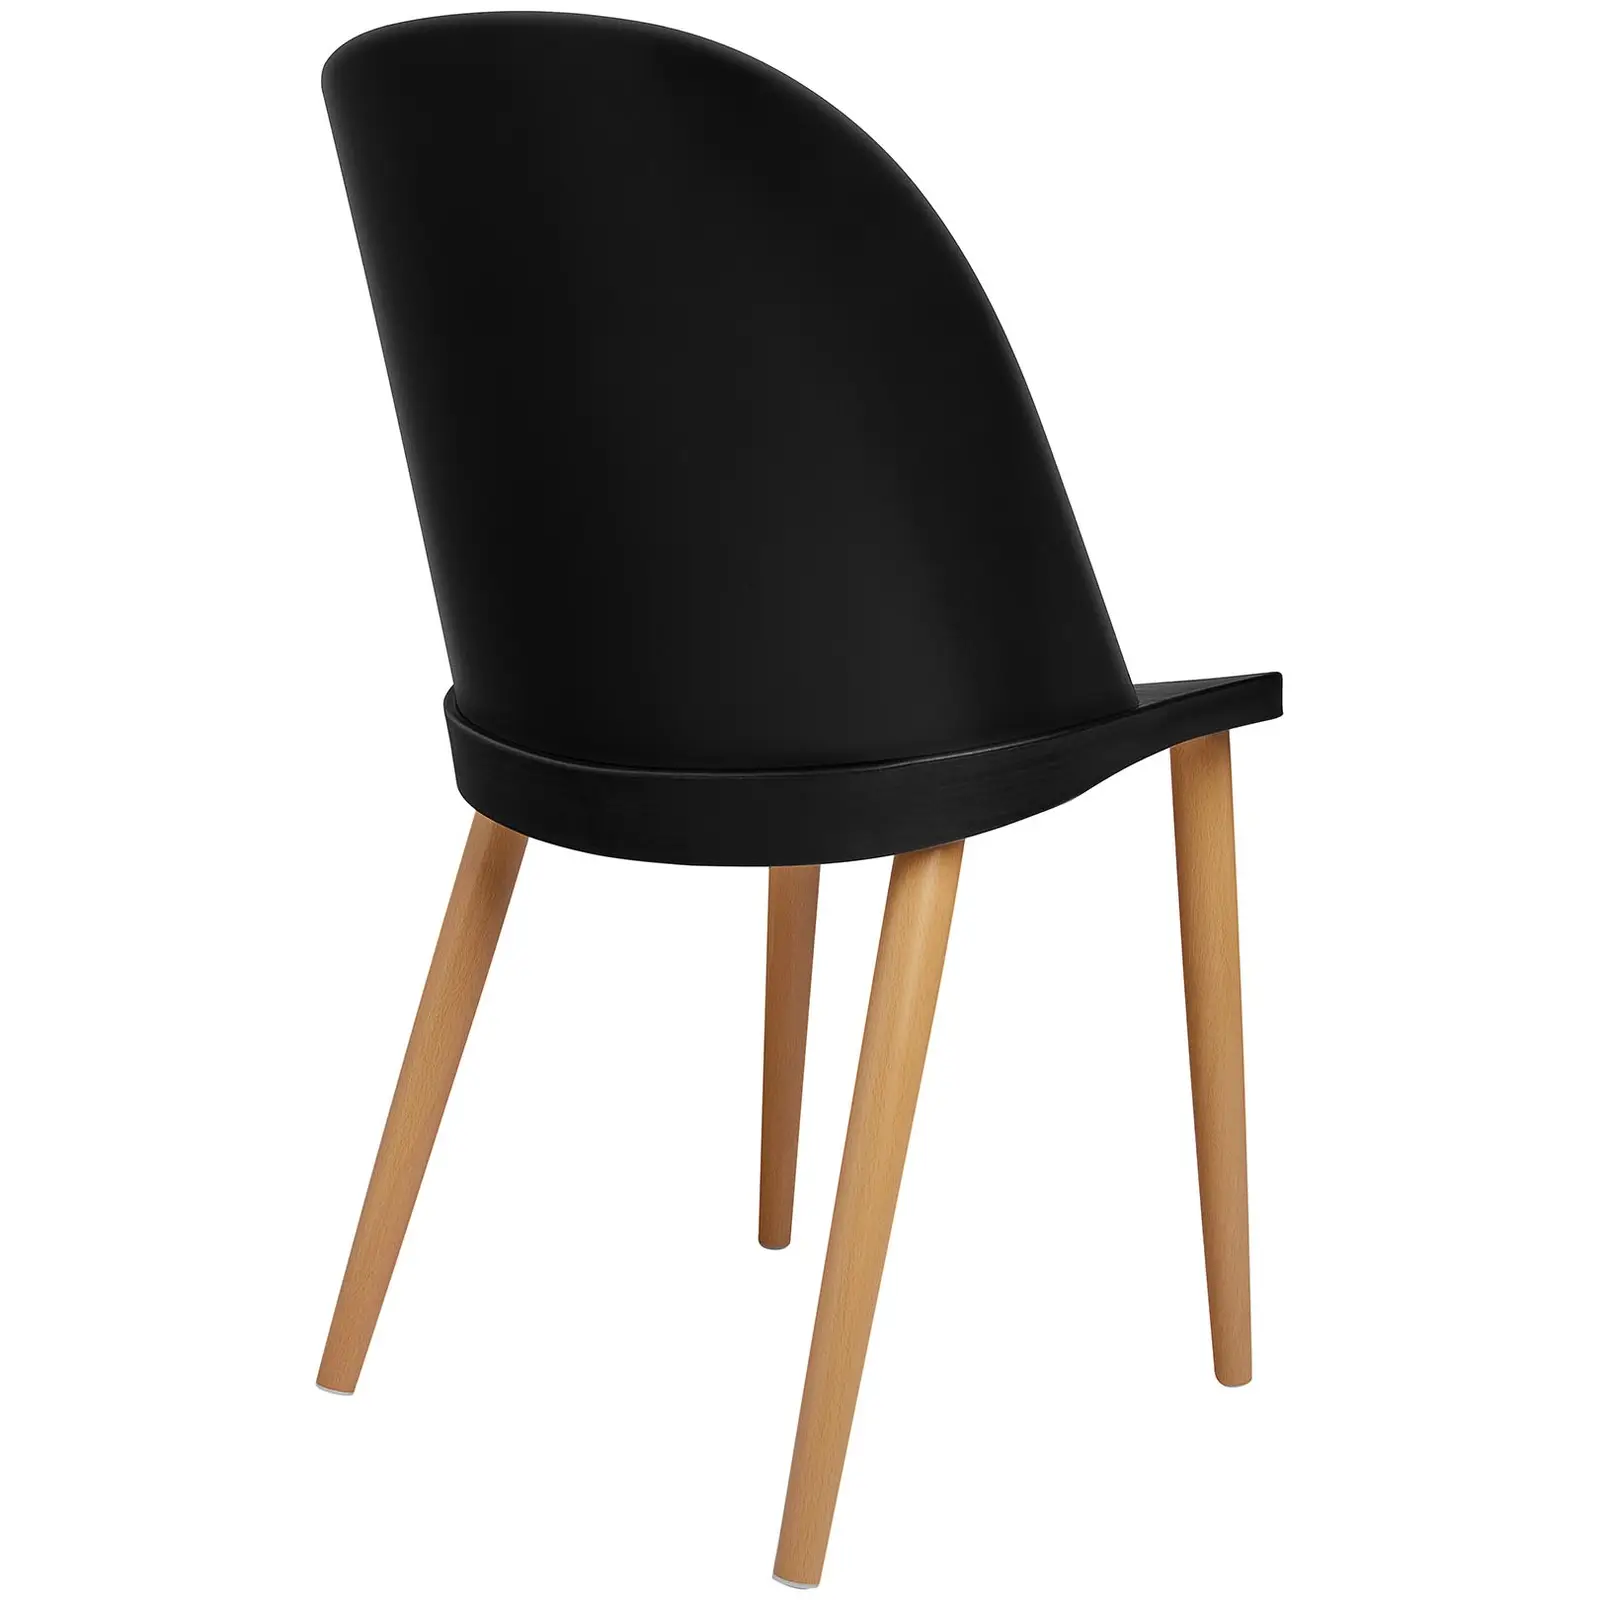 Chaise - Lot de 2 - 150 kg max. - Surface d'assise de 43,5 x 43 cm - Coloris noir